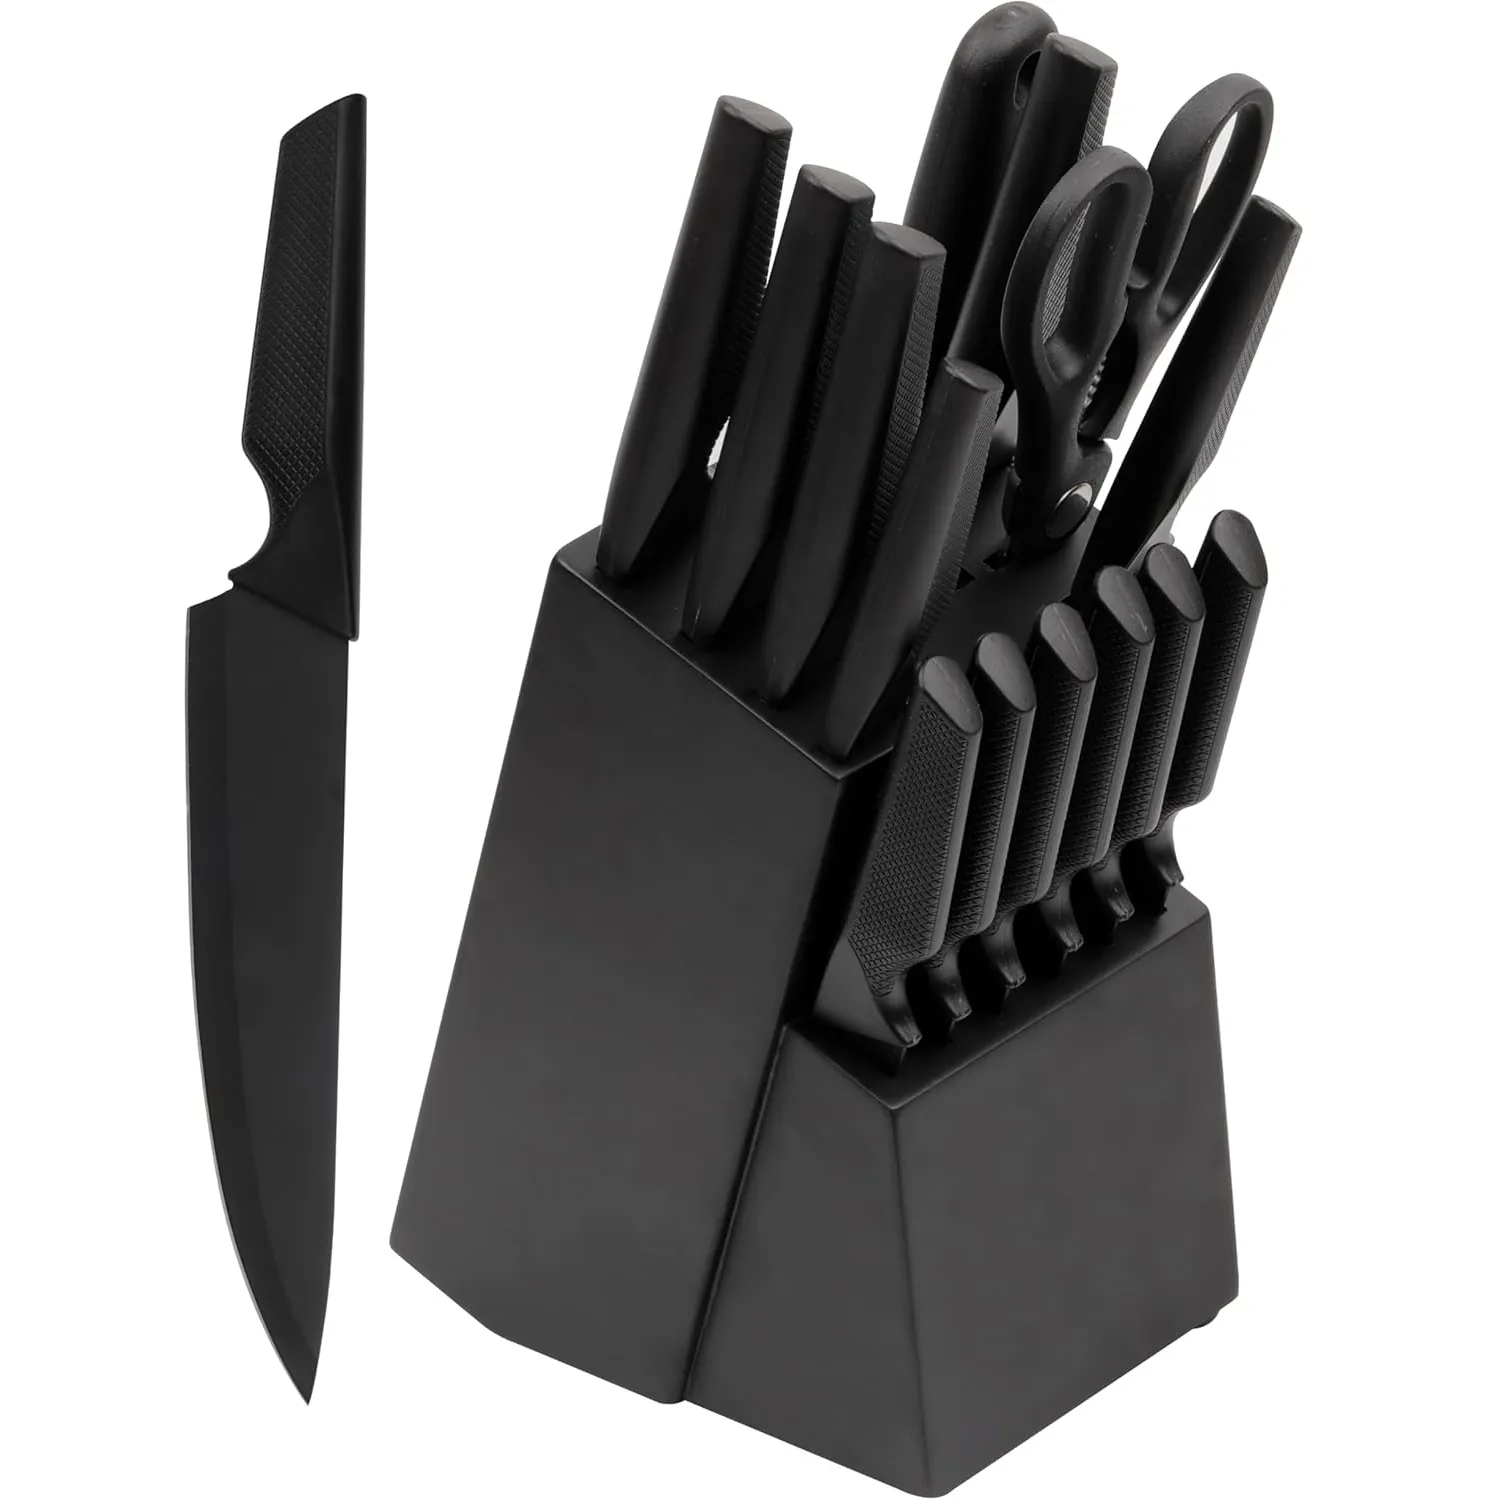 Lot de 15 couteaux de cuisine professionnels en acier inoxydable avec revêtement noir antiadhésif et porte-couteau